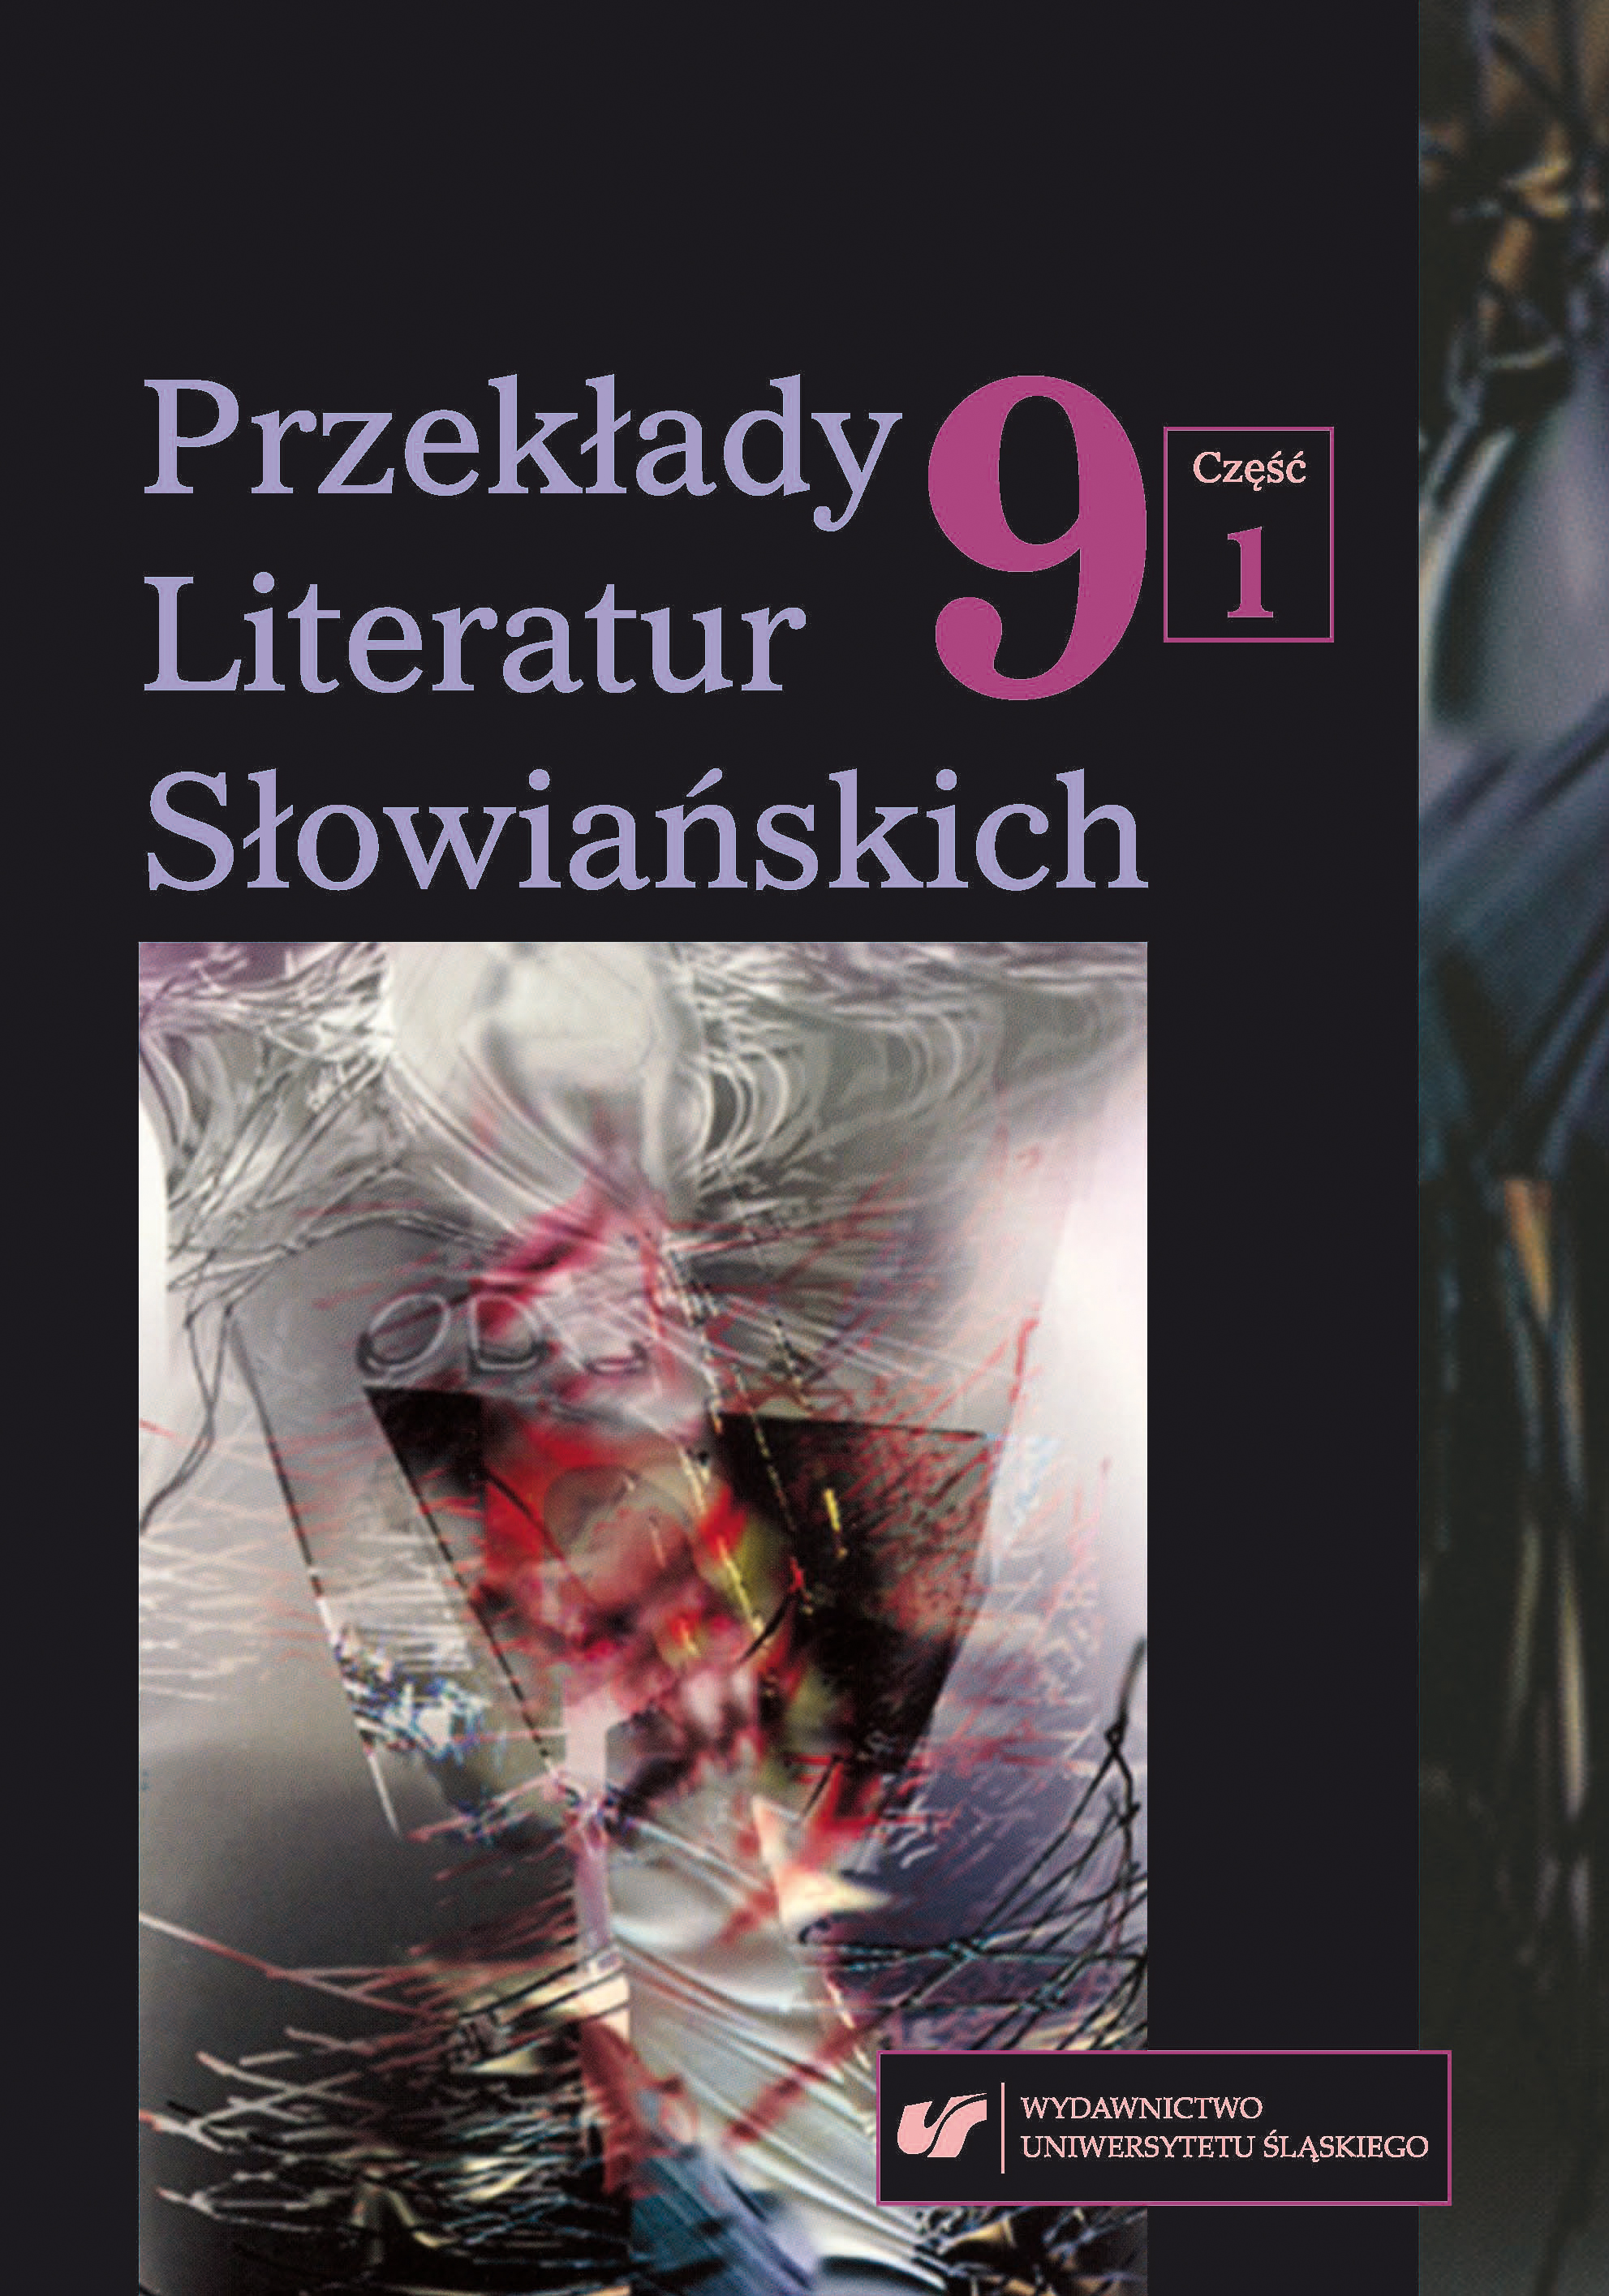 O najstarszych polskich przekładach literatury słowackiej